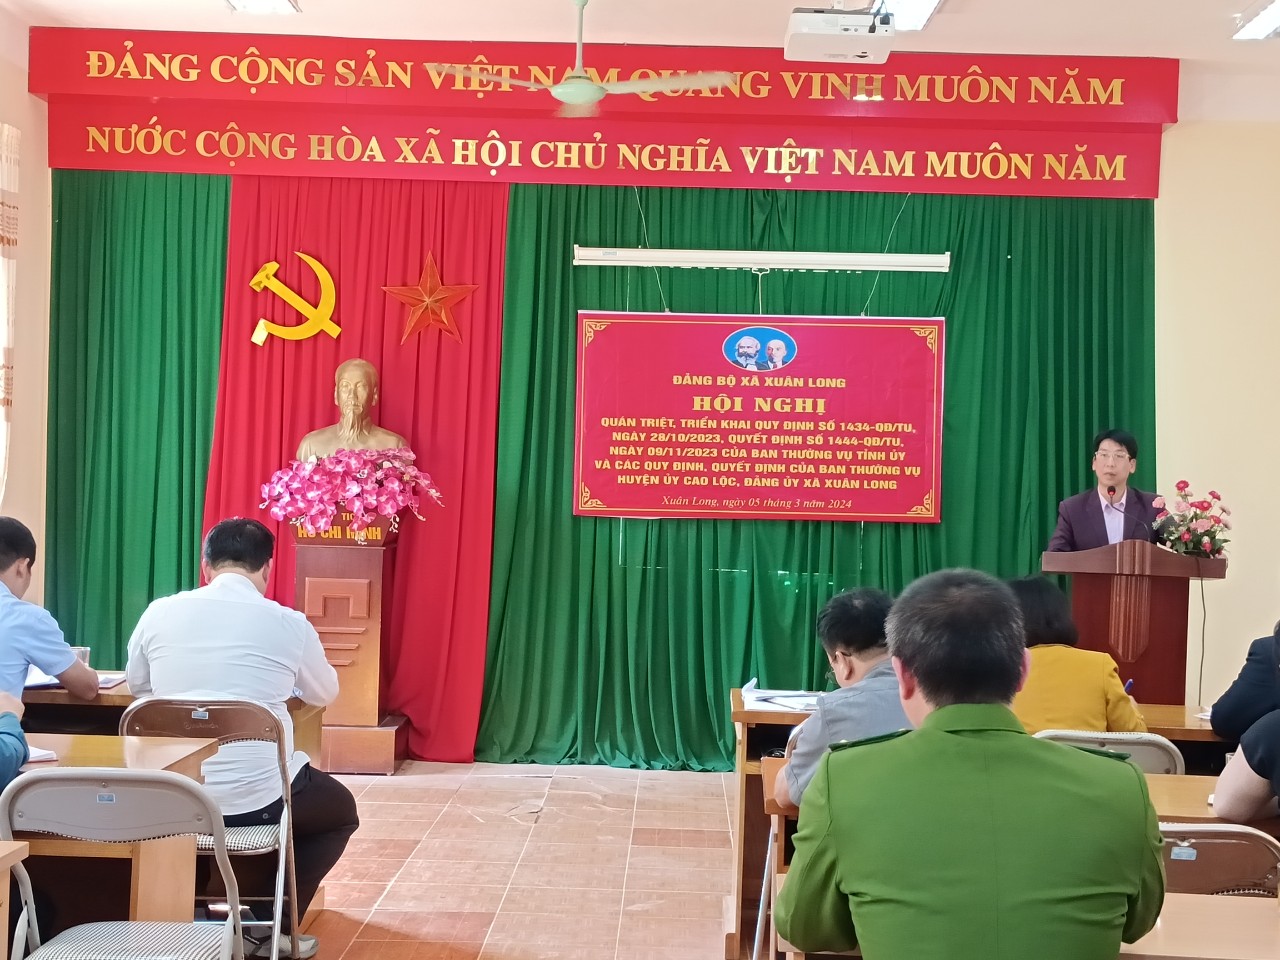 Đồng chí Vy Minh Long, Ủy viên BTV Huyện ủy, Trưởng Ban Tuyên giáo, Giám đốc Trung tâm Chính trị huyện phát biểu tại Hội nghị.